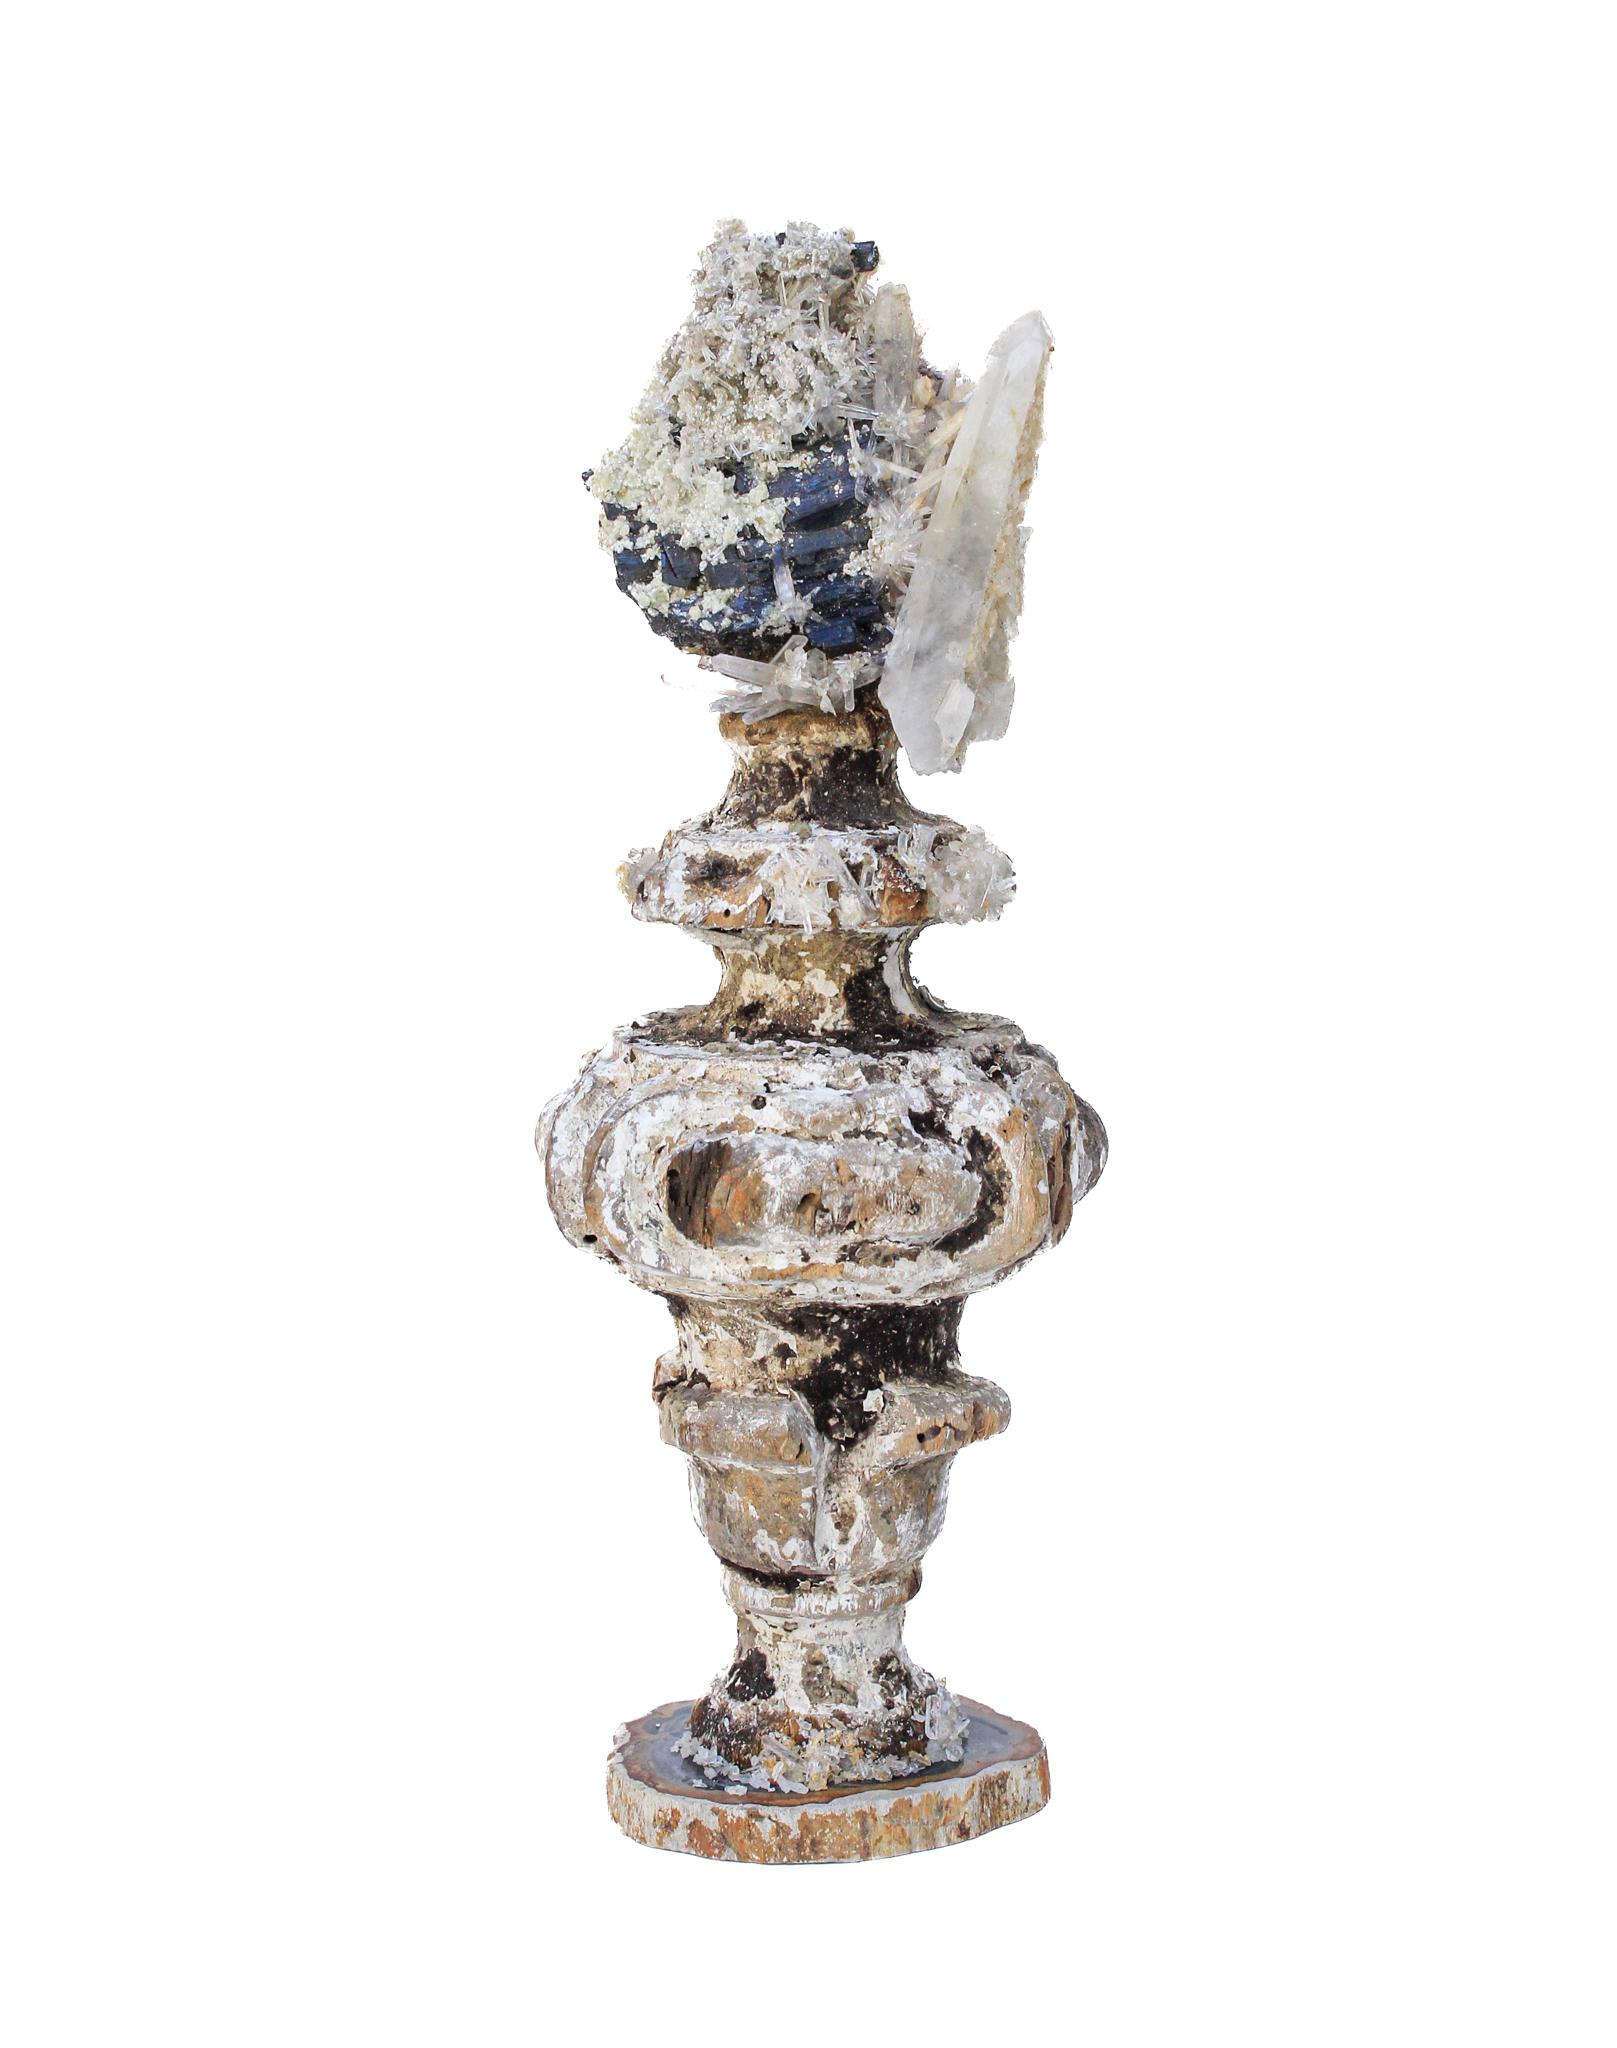 italienische Vase aus dem 17. Jahrhundert mit schwarzem Turmalin und Kristallen auf einem Sockel aus versteinertem Holz

Dieses Fragment stammt aus einer Kirche in Florenz. Es wurde gefunden und vor dem historischen Hochwasser des Arno im Jahr